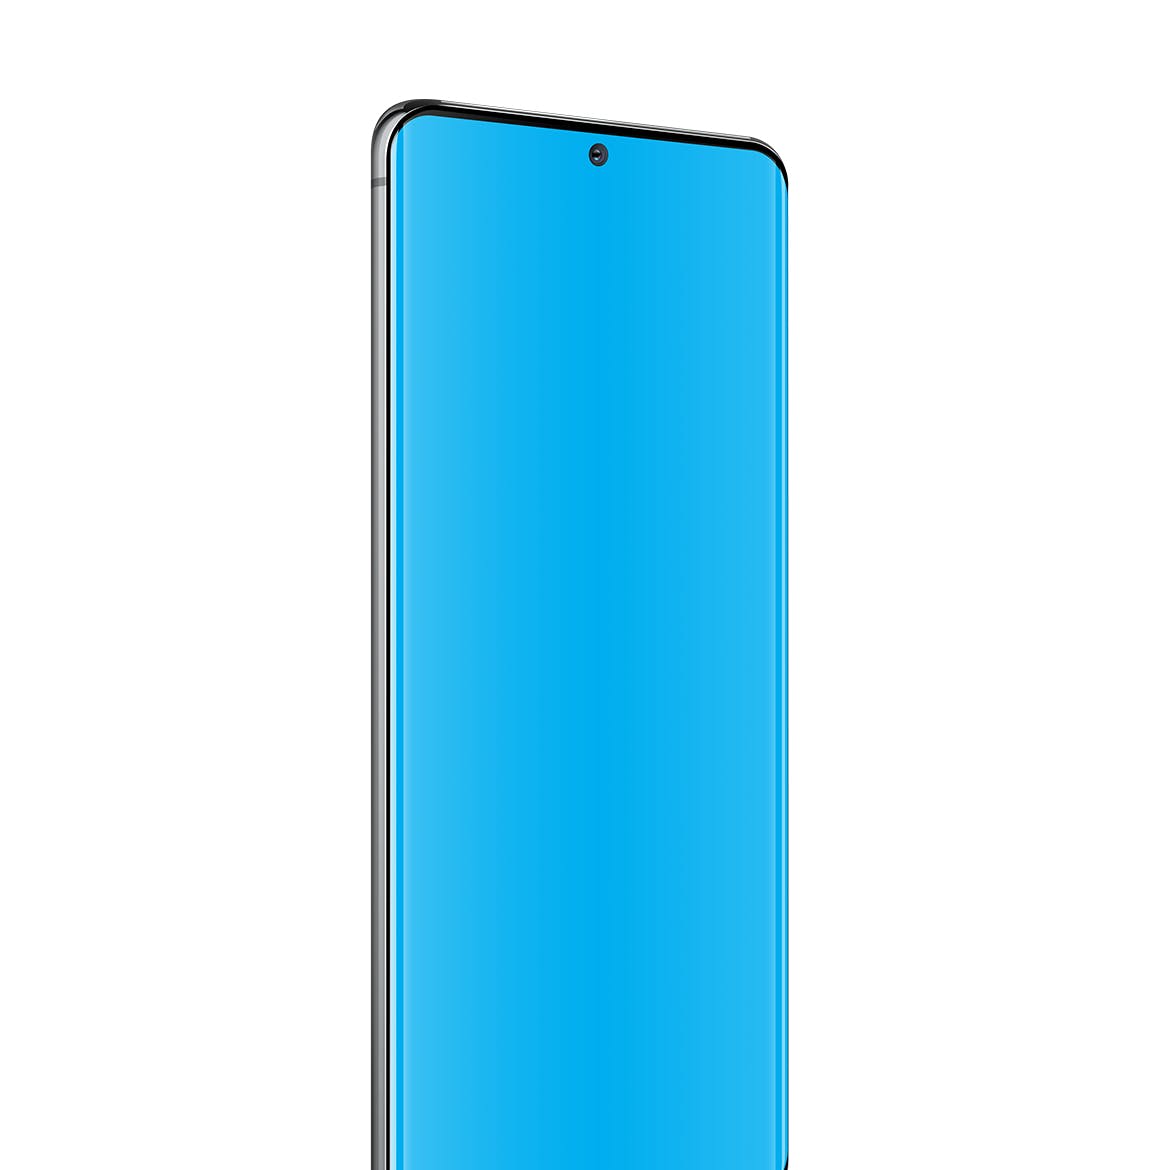 三星Galaxy S20 Ultra智能手机UI设计屏幕预览素材库精选样机 S20 Ultra Layered PSD Mockups插图(3)